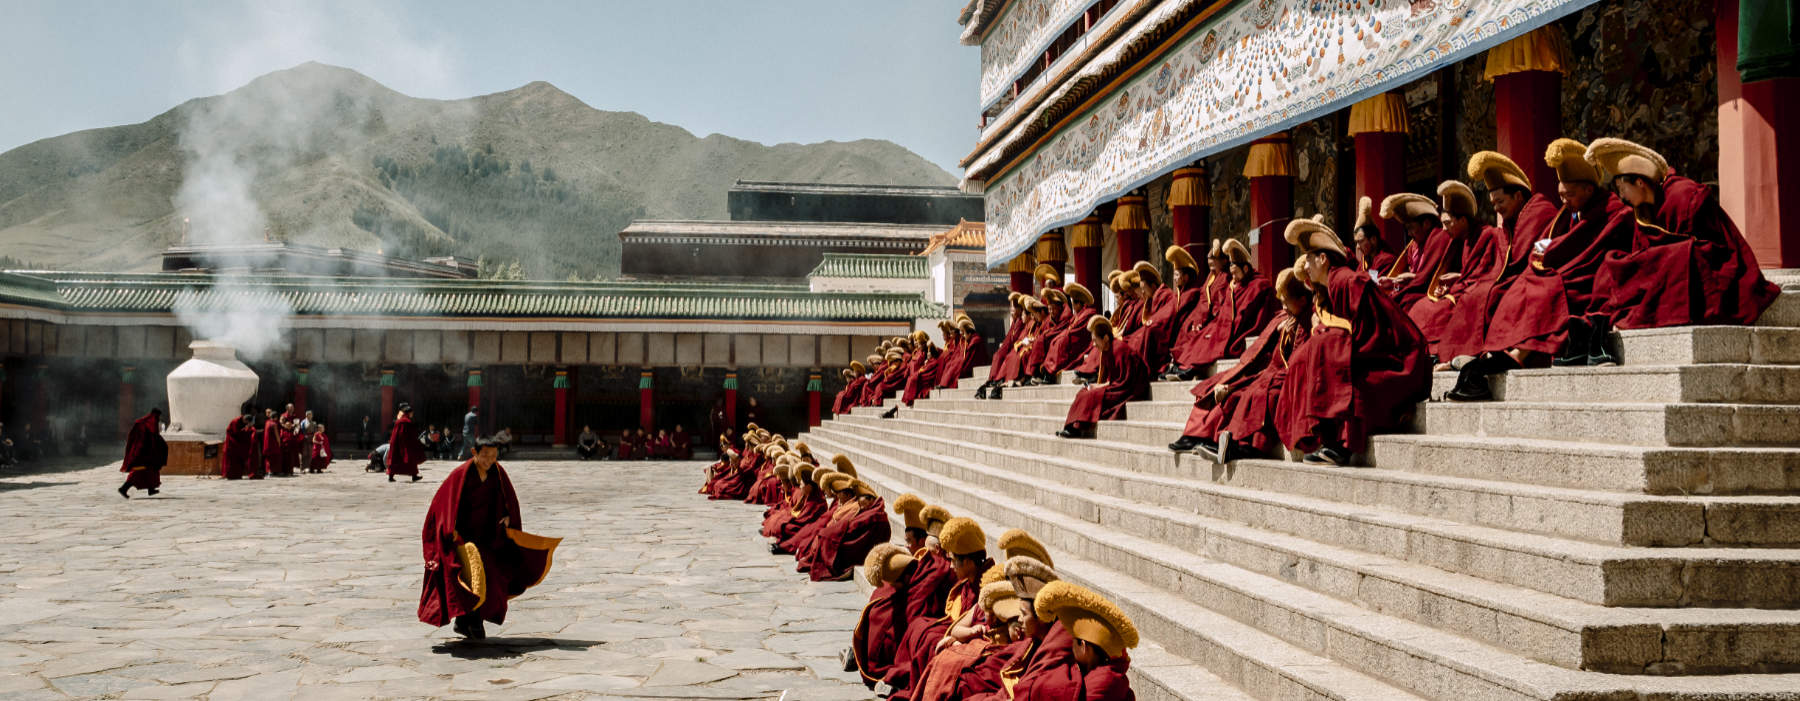 Tibet<br class="hidden-md hidden-lg" /> Tours